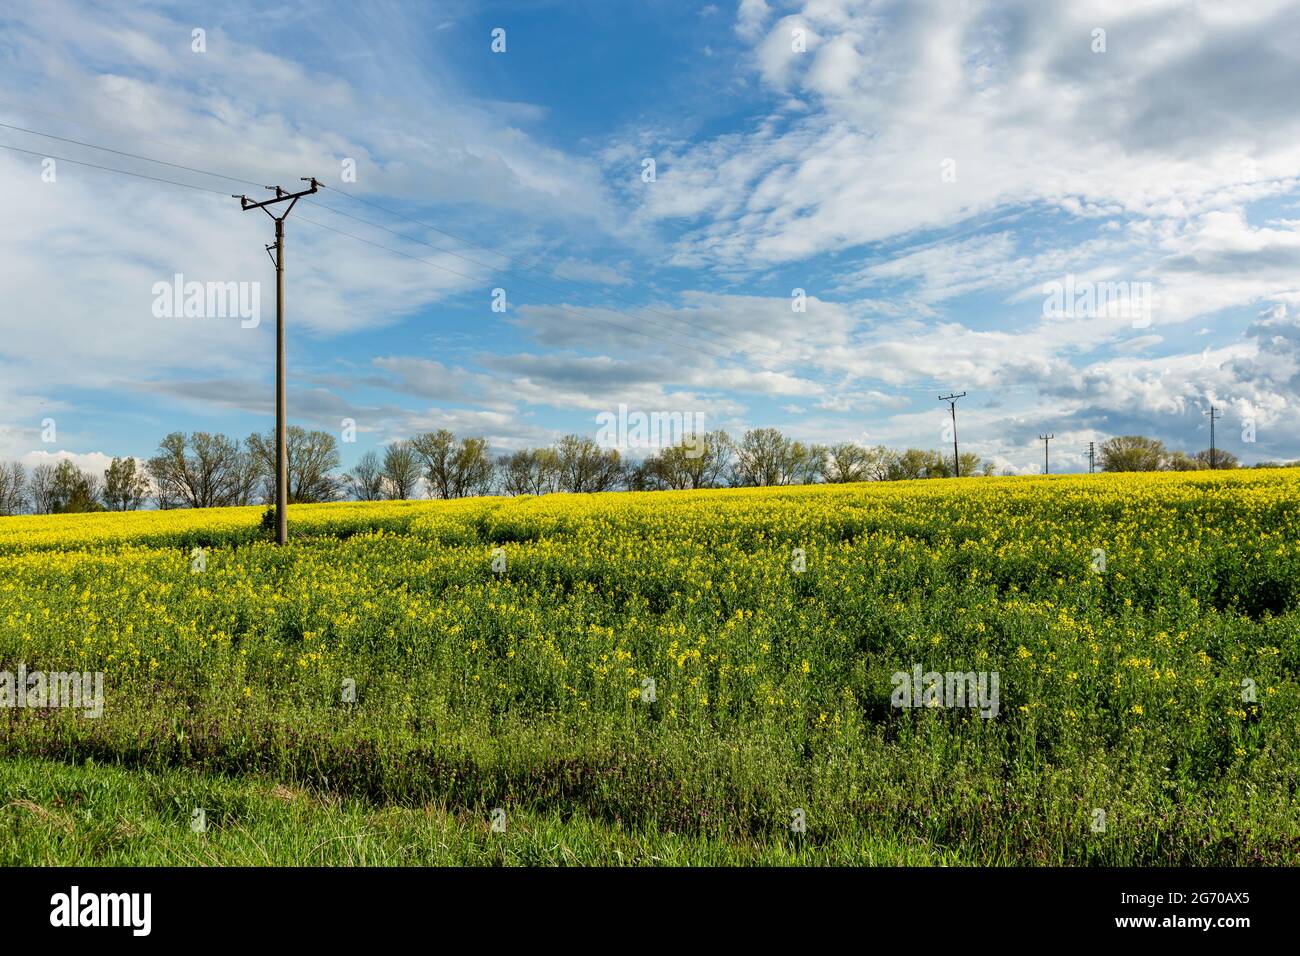 Vista della campagna rurale con campo di colza giallo, erba verde, alberi all'orizzonte, pali elettrici e linee. Giornata di primavera soleggiata con cielo blu. Foto Stock